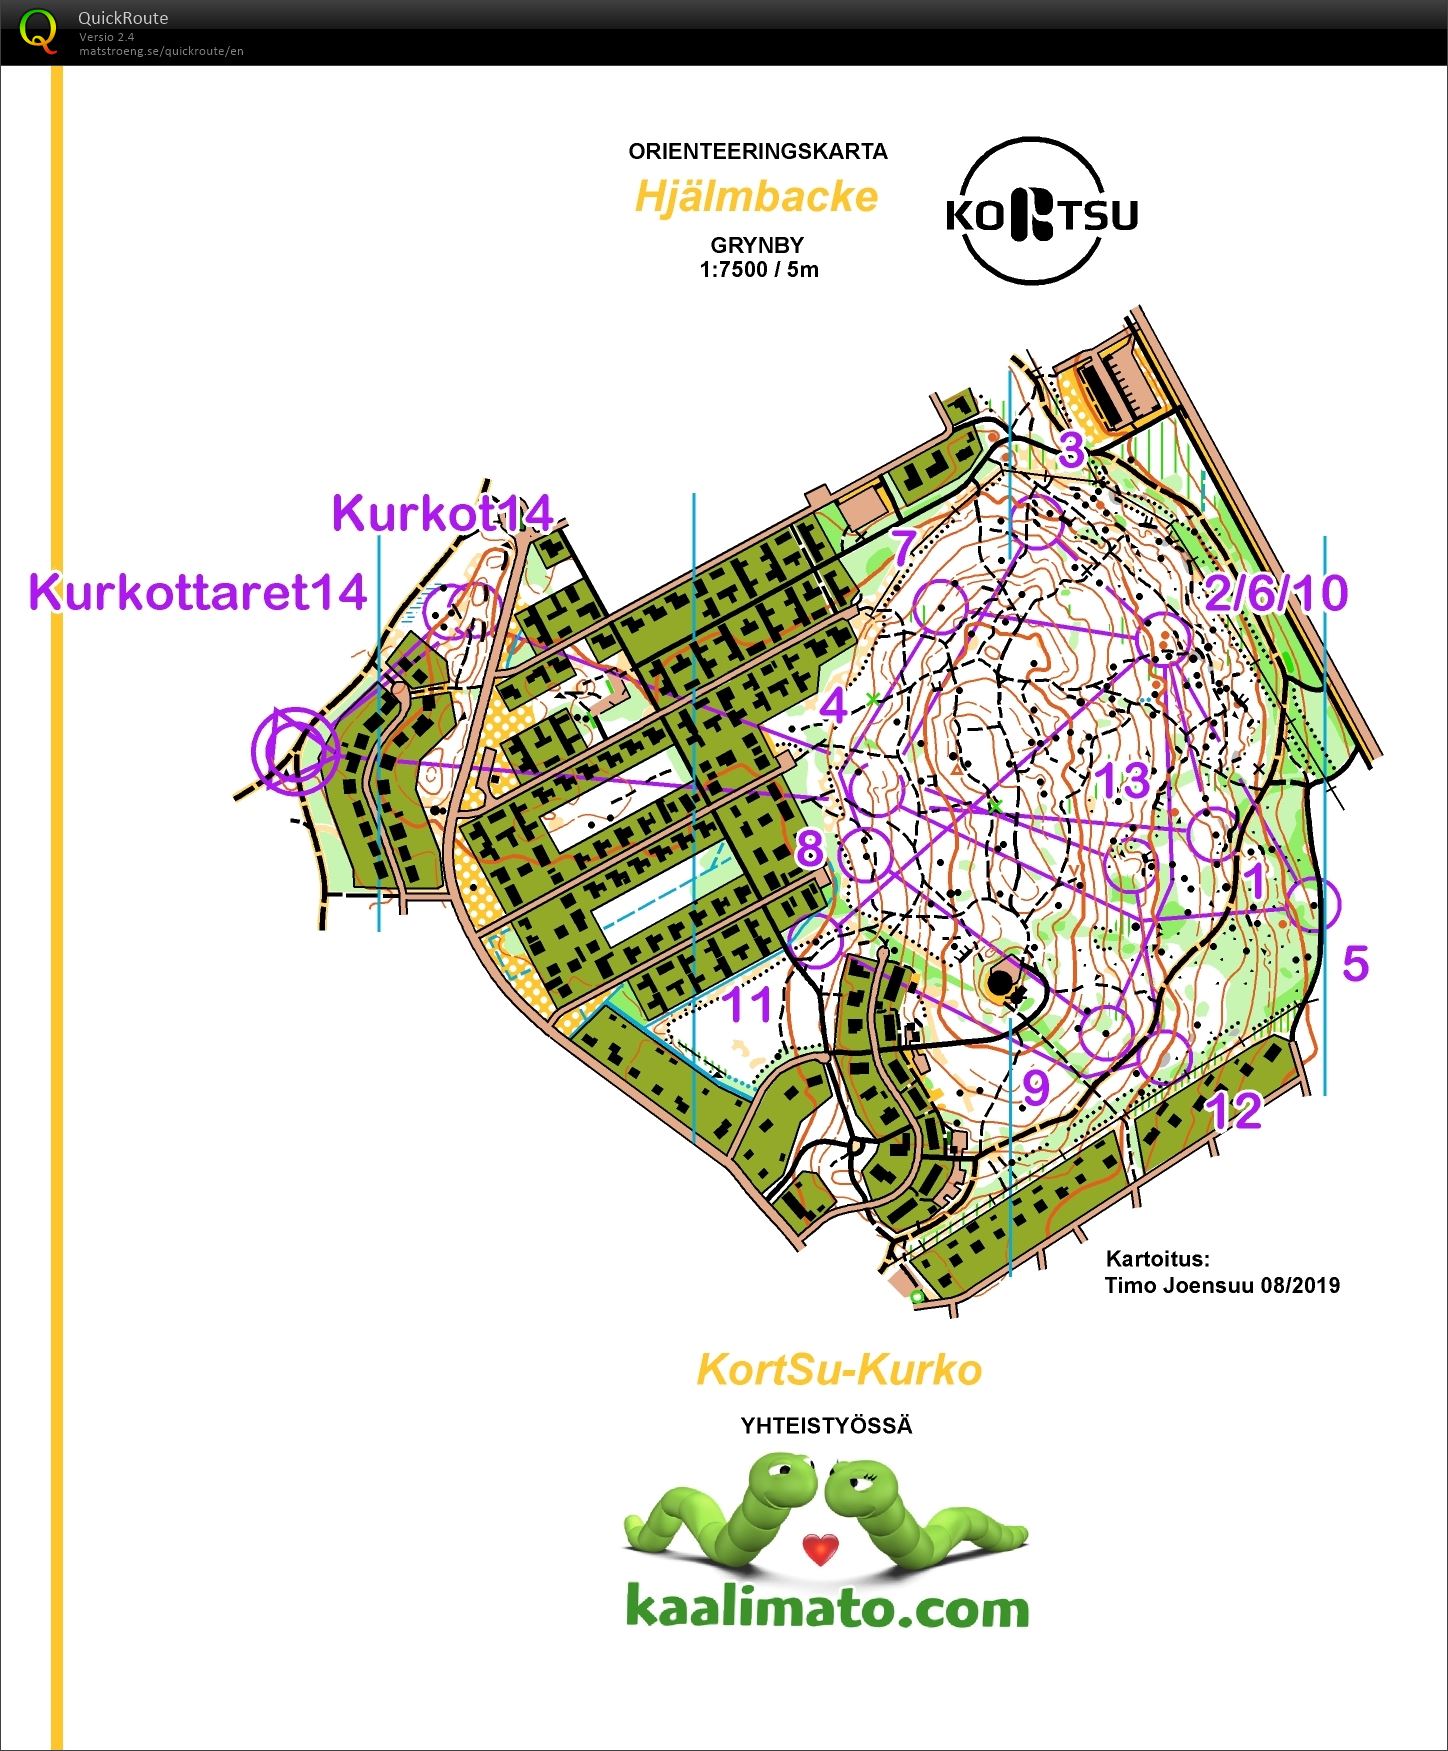 KortSu-Kurko (14-11-2019)